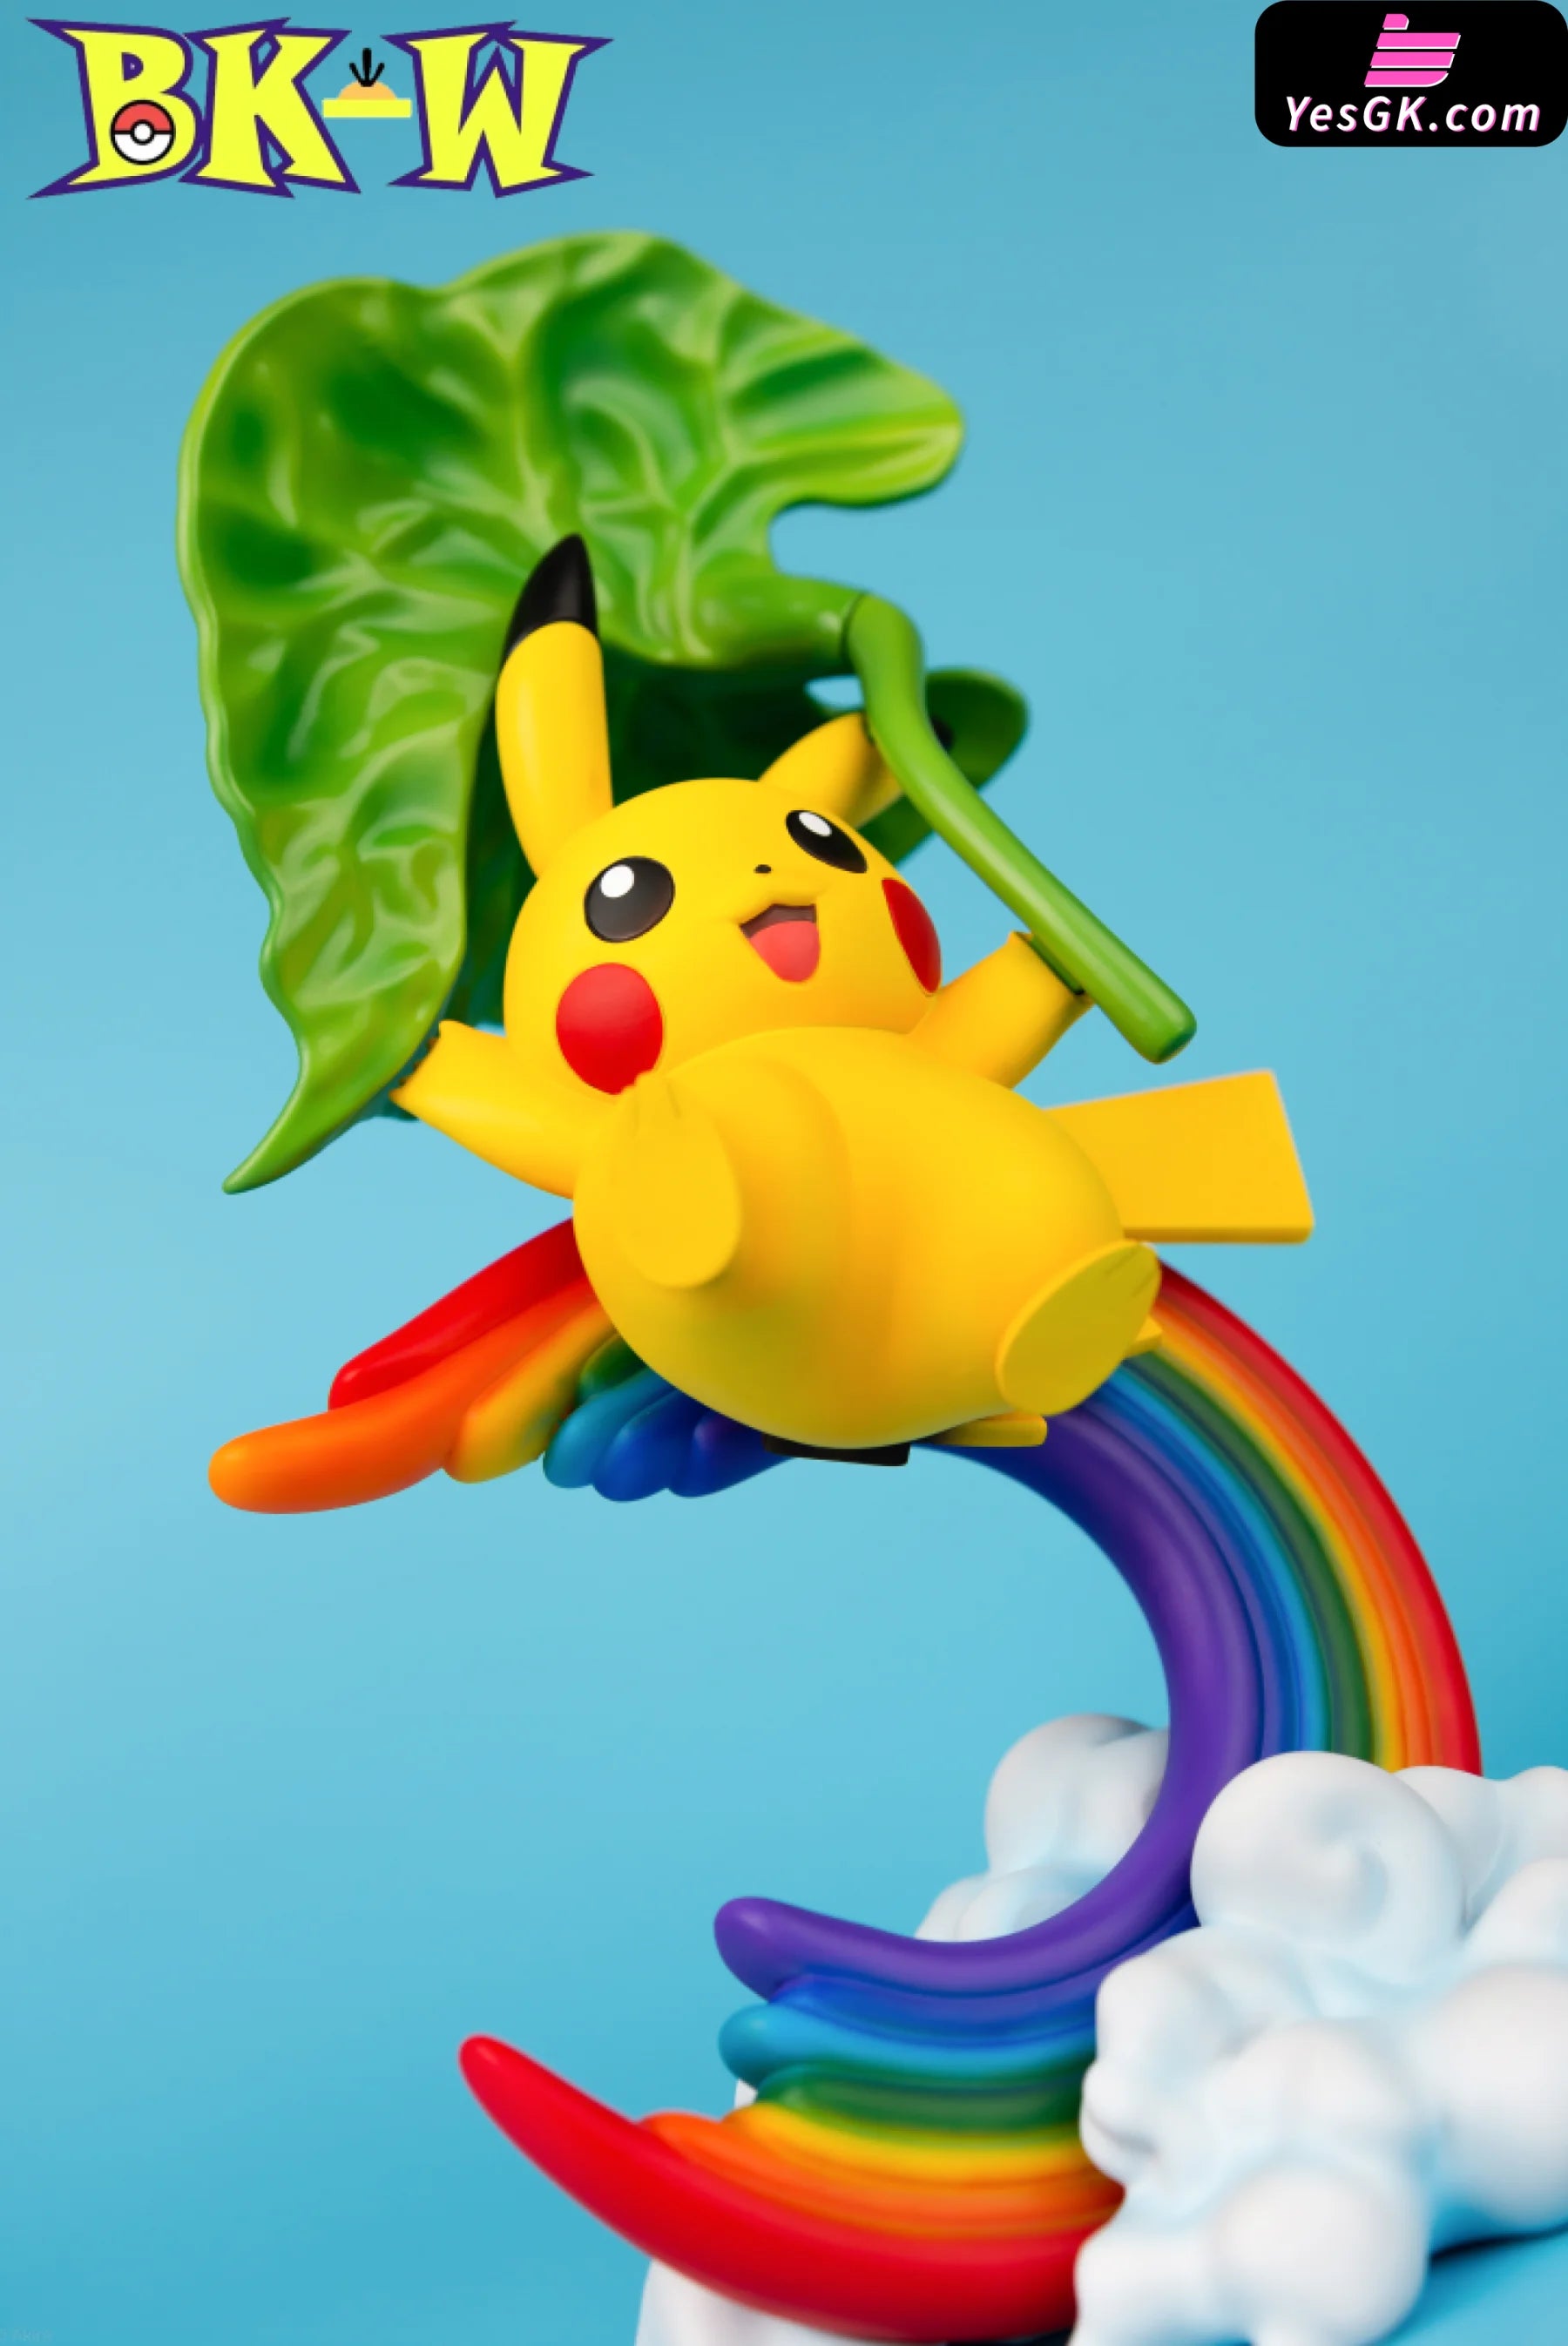 Pokémon Rainbow Pikachu Statue - Bkw Club Studio [Pre-Order]